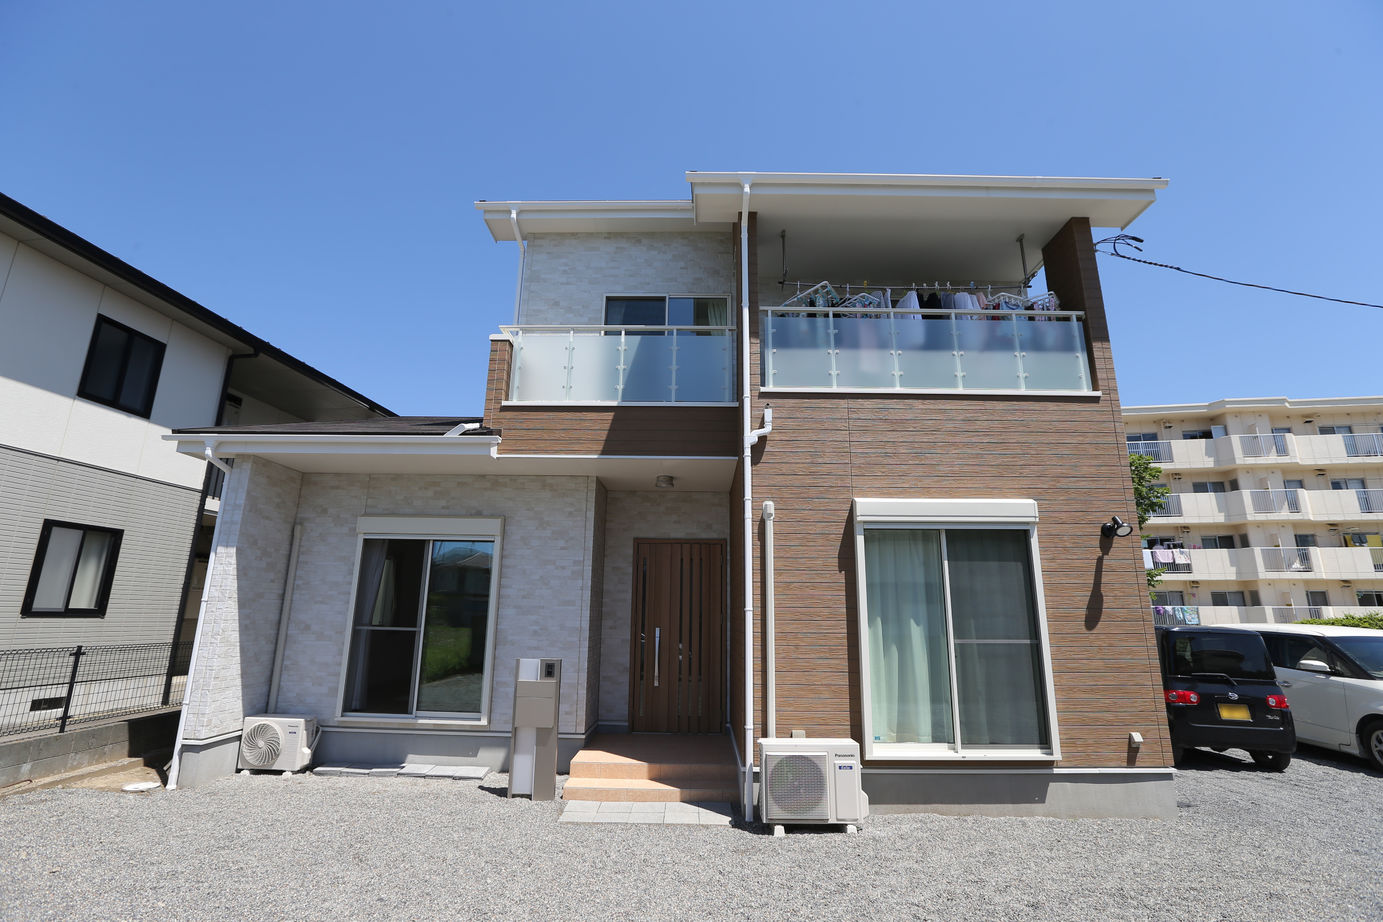 Suumo ブラーボコンフォート仕様の二世帯住宅 アイダ設計 の建築実例詳細 注文住宅